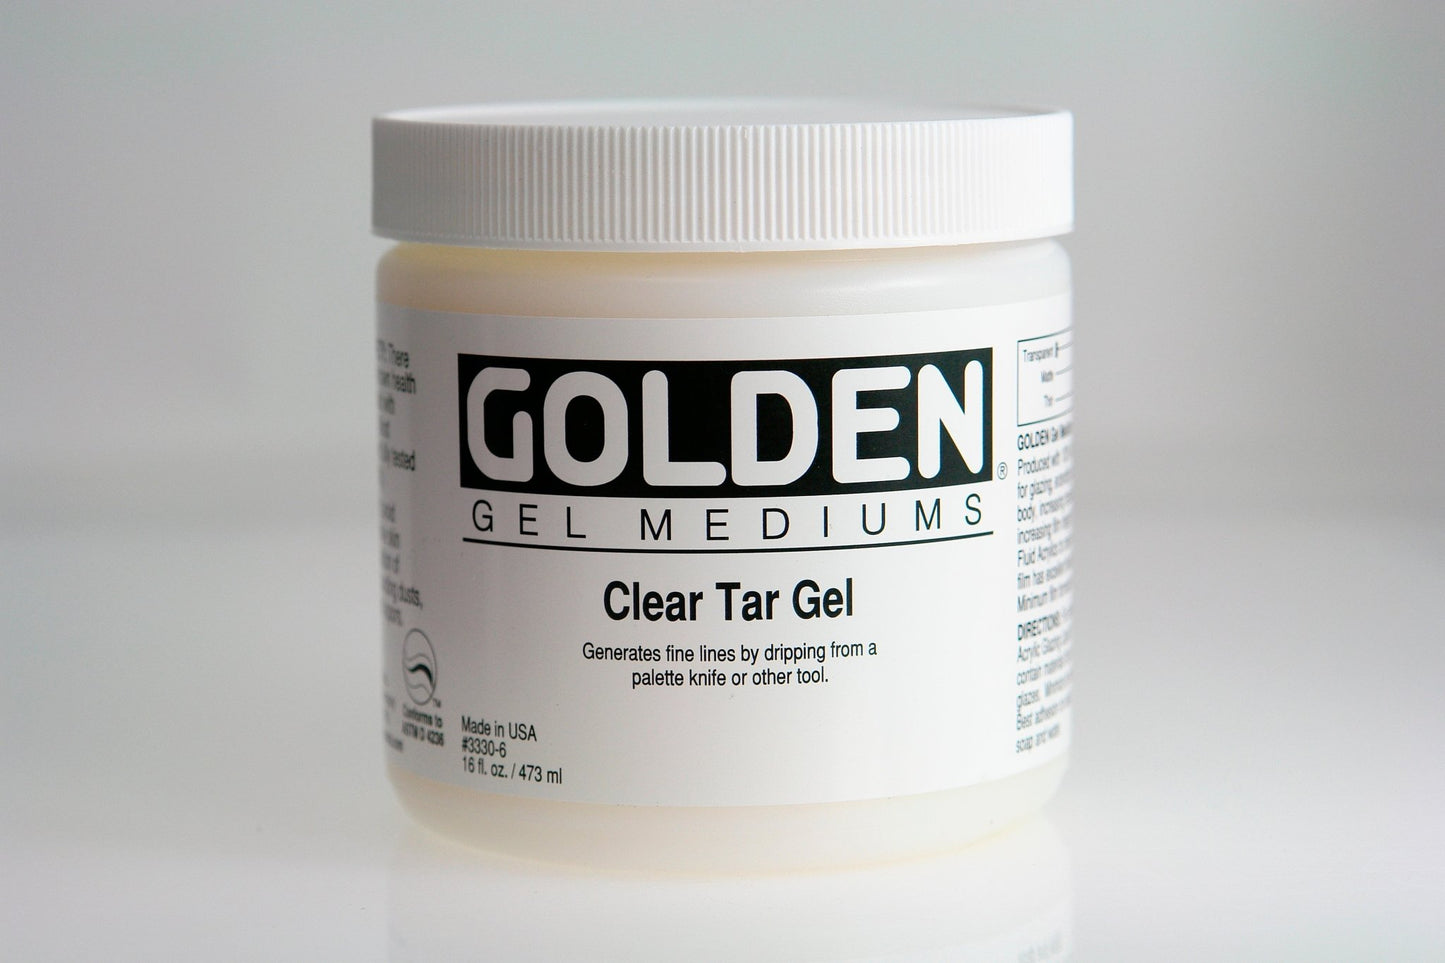 Golden Clear Tar Gel 473ml - theartshop.com.au